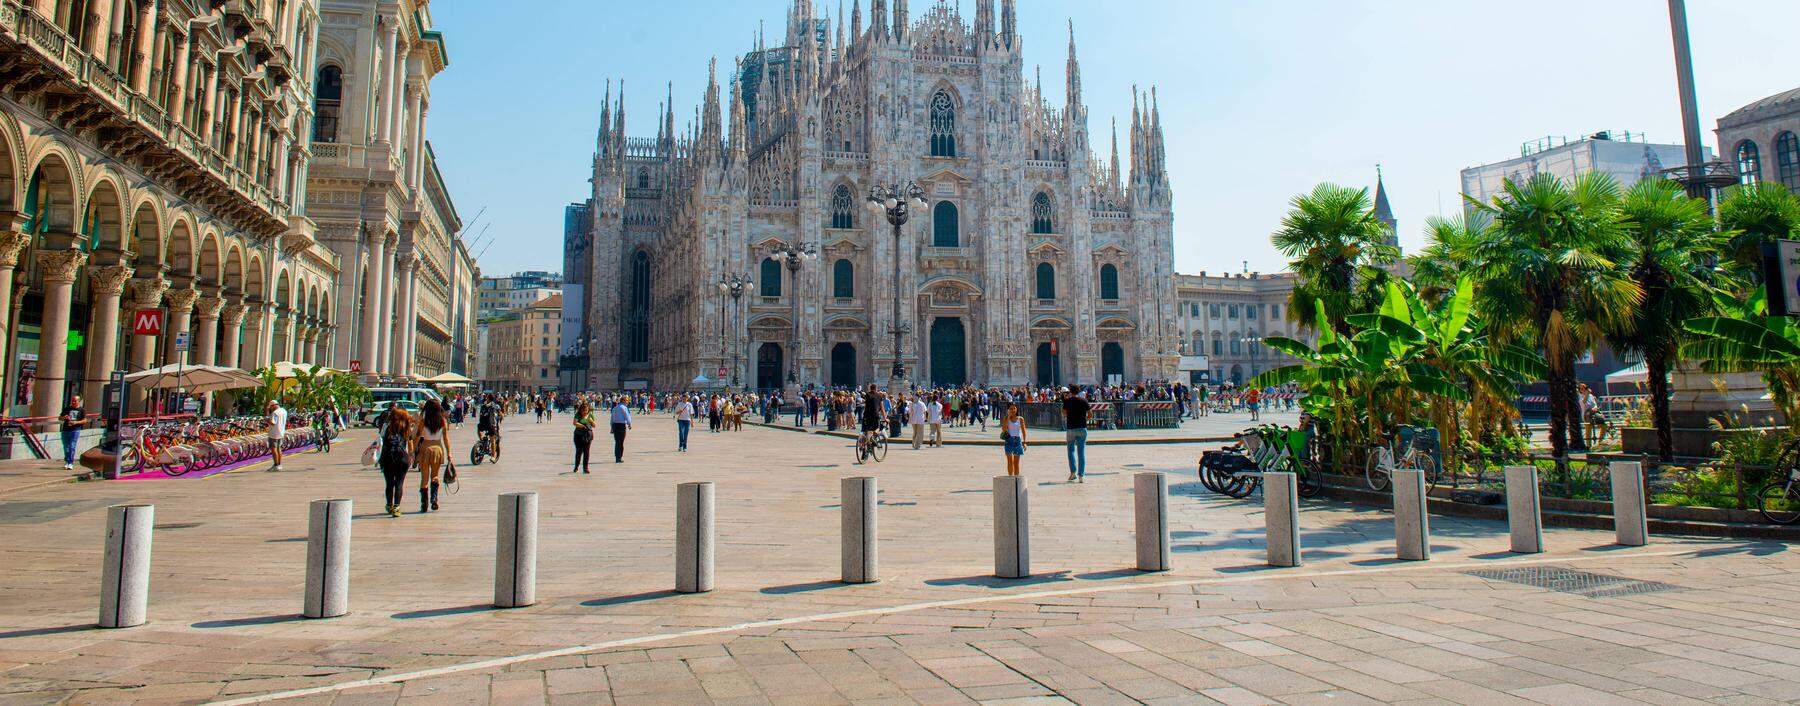 Zentral. Den Dom und die Galleria Vittorio Emanuele daneben, das wollen Touristenmassen halt sehen.  